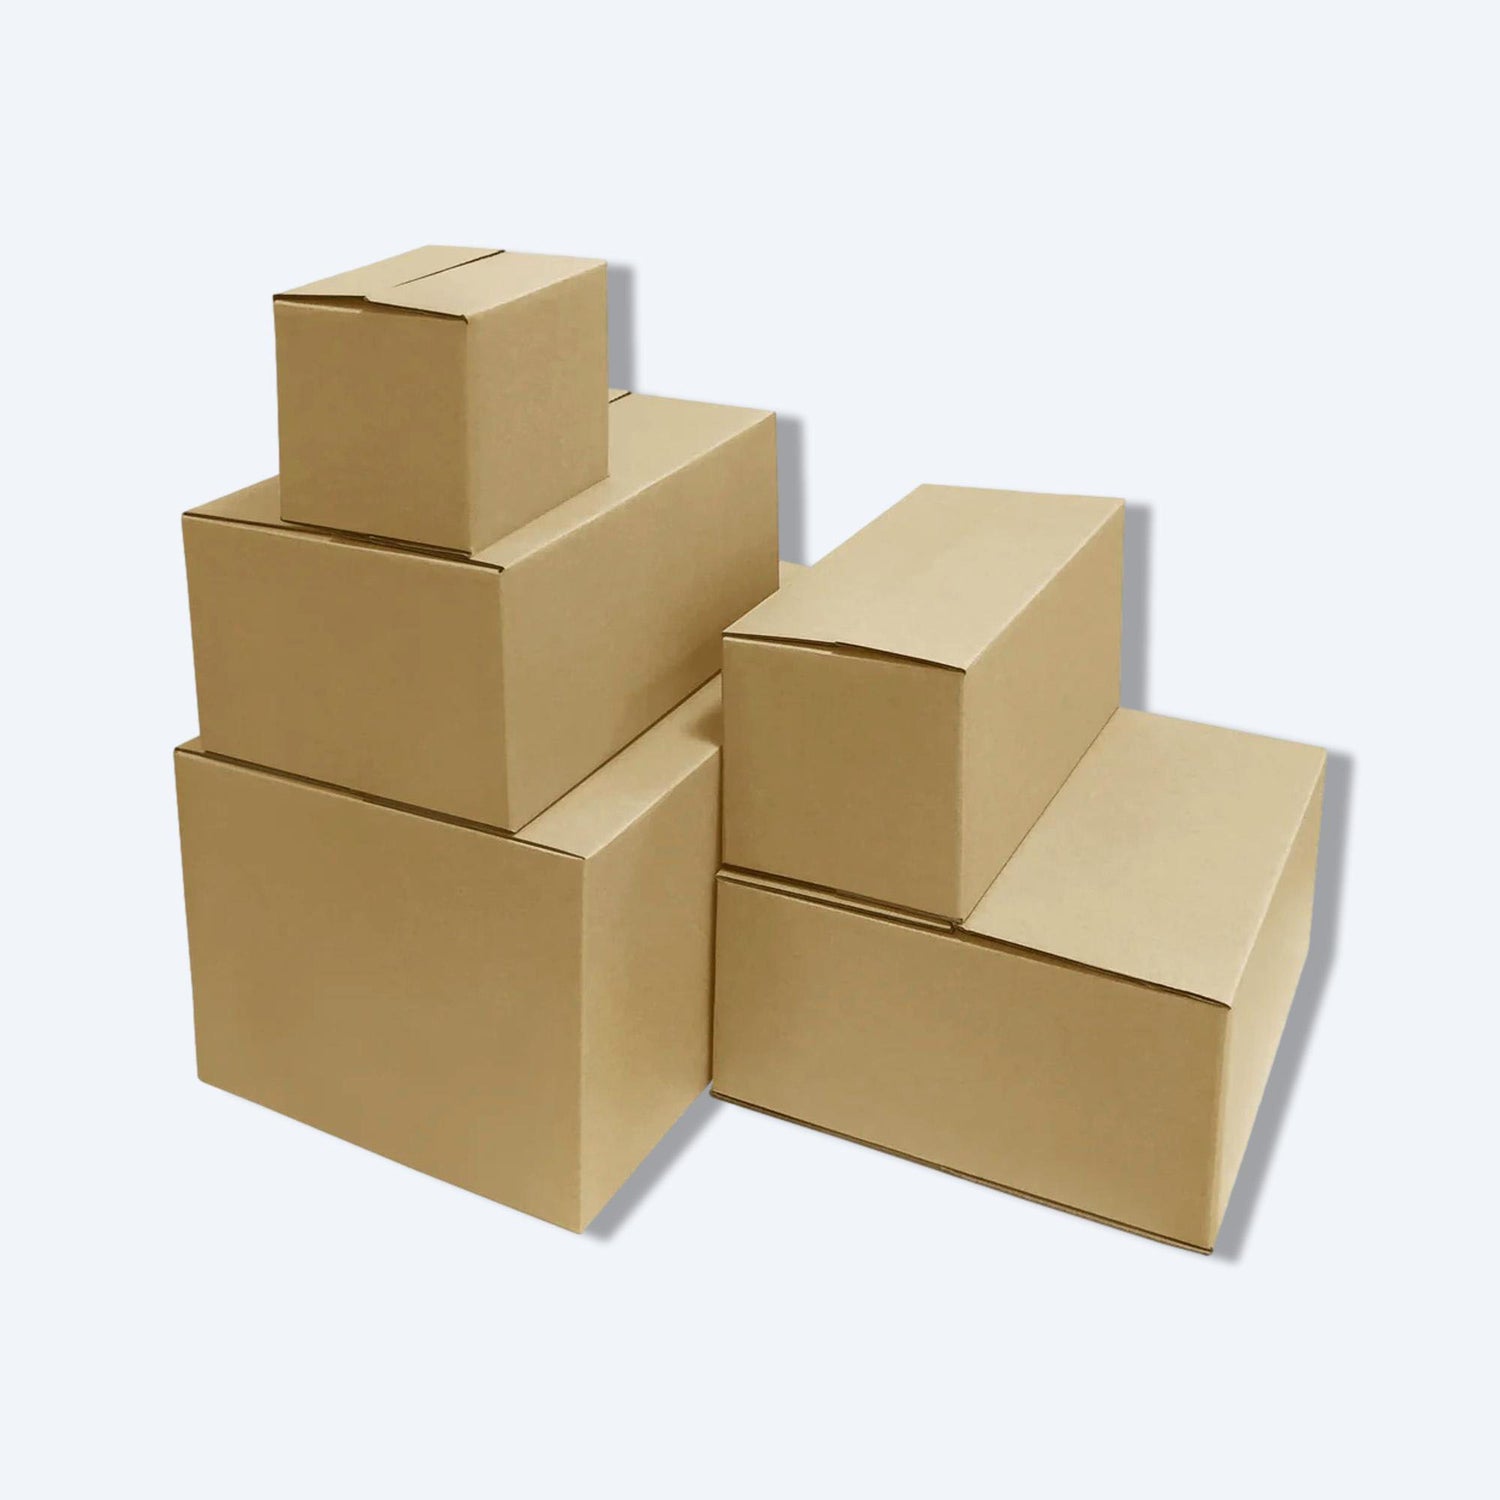 圖片顯示多個堆疊的棕色紙盒，這些紙盒是hktvmall物流中常用的包裝選擇，用於保護和運送各種商品。在hktvmall購物時，這樣的紙盒確保產品在運送過程中的安全。